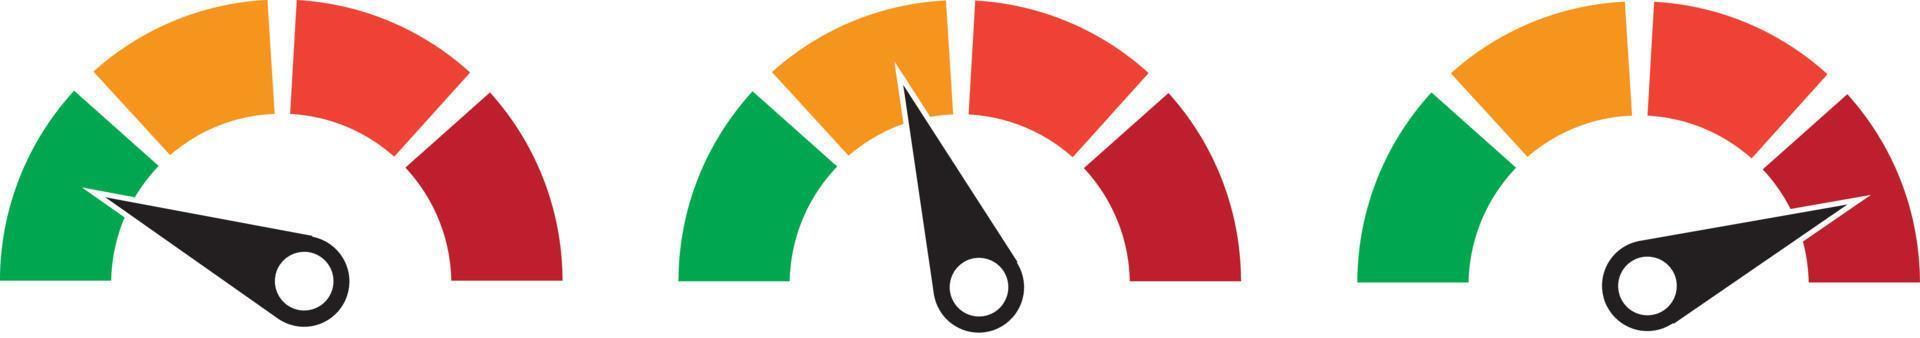 conjunto de tacômetros vetoriais de cores, medidor de vazão com indicador na parte verde, laranja e vermelha, ícone de medição de velocímetro e desempenho, ilustração para sua página da web, infográfico, aplicativos e folheto vetor